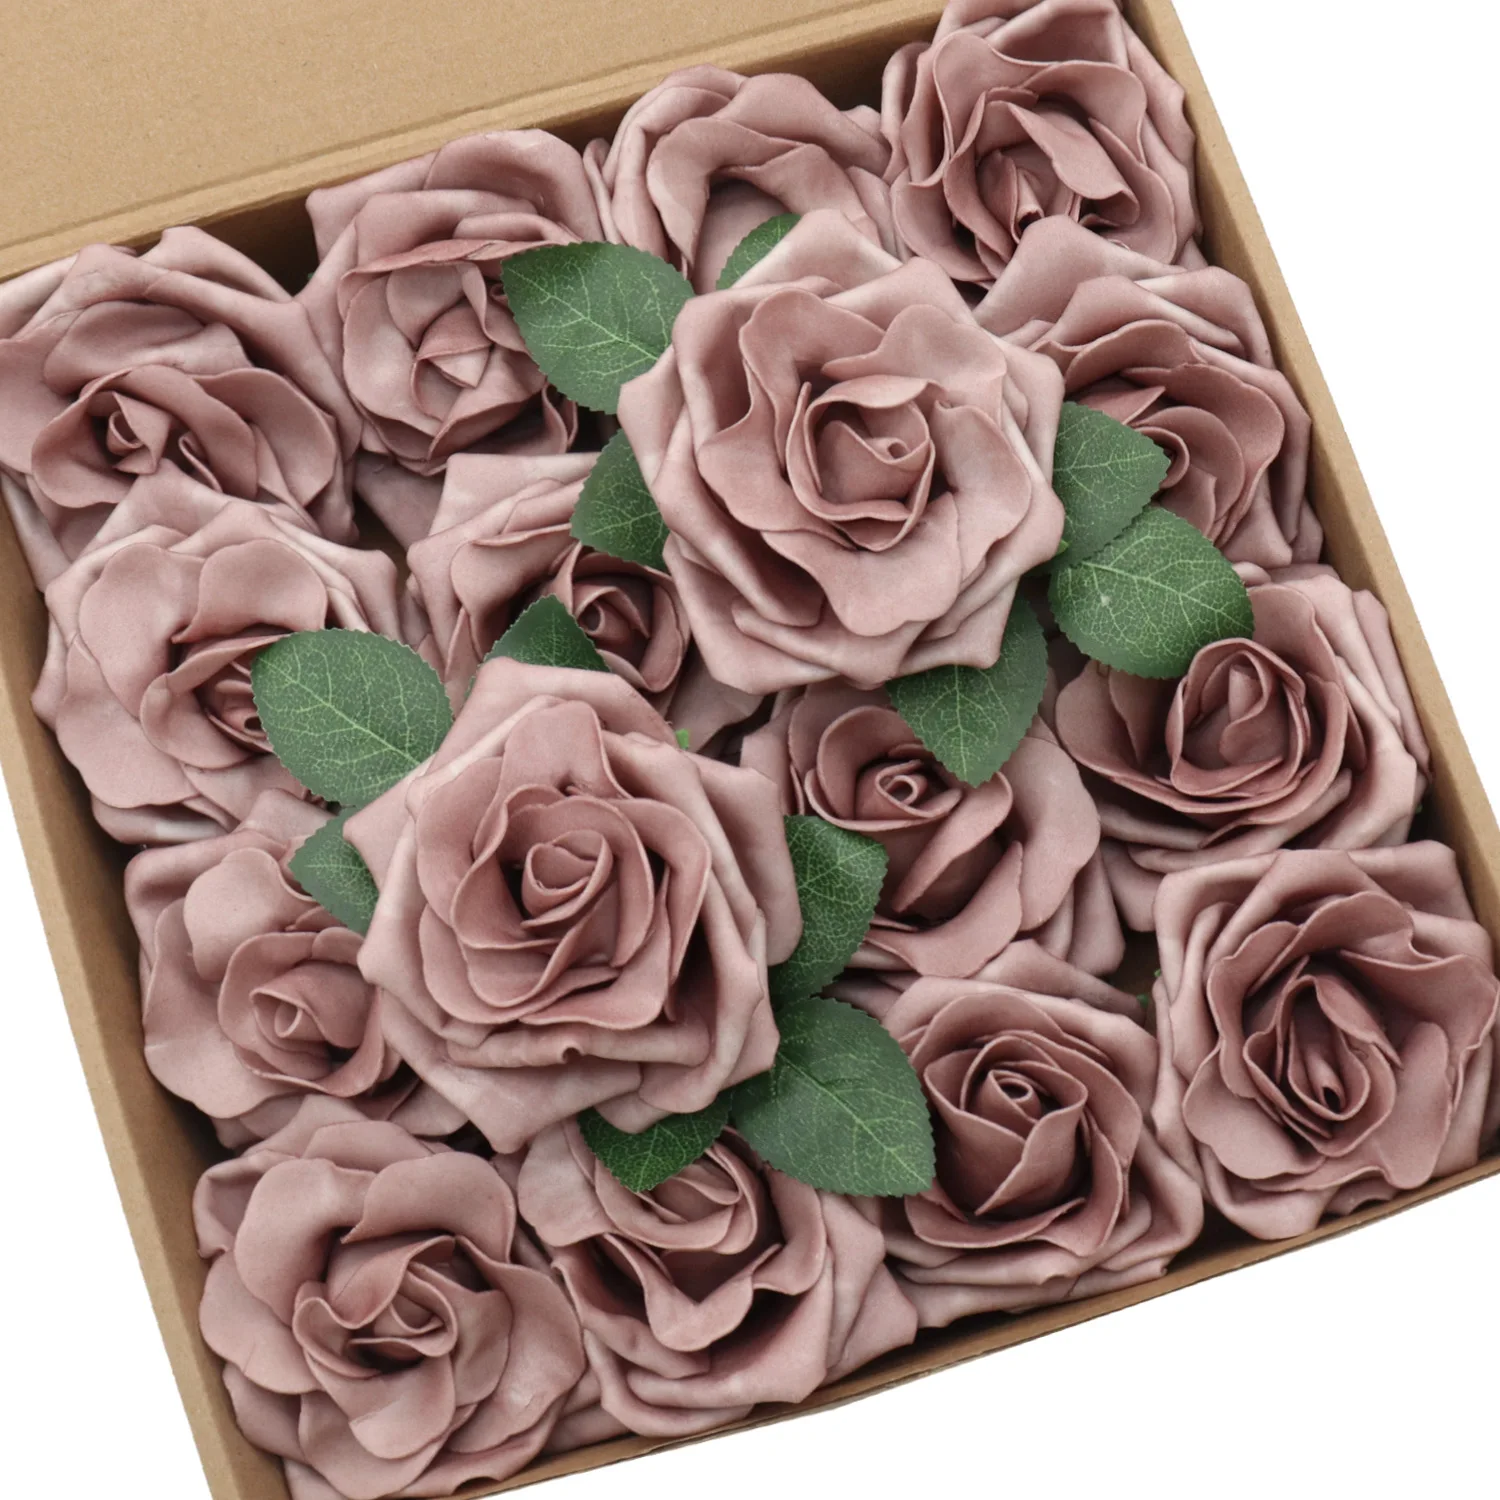 

D-Seven Artificial Flowers 16/32pcs 3.5" Dusty Rose Avalanche Roses w/Stem for DIY Wedding Bouquet Floral Centerpiece Cake Decor